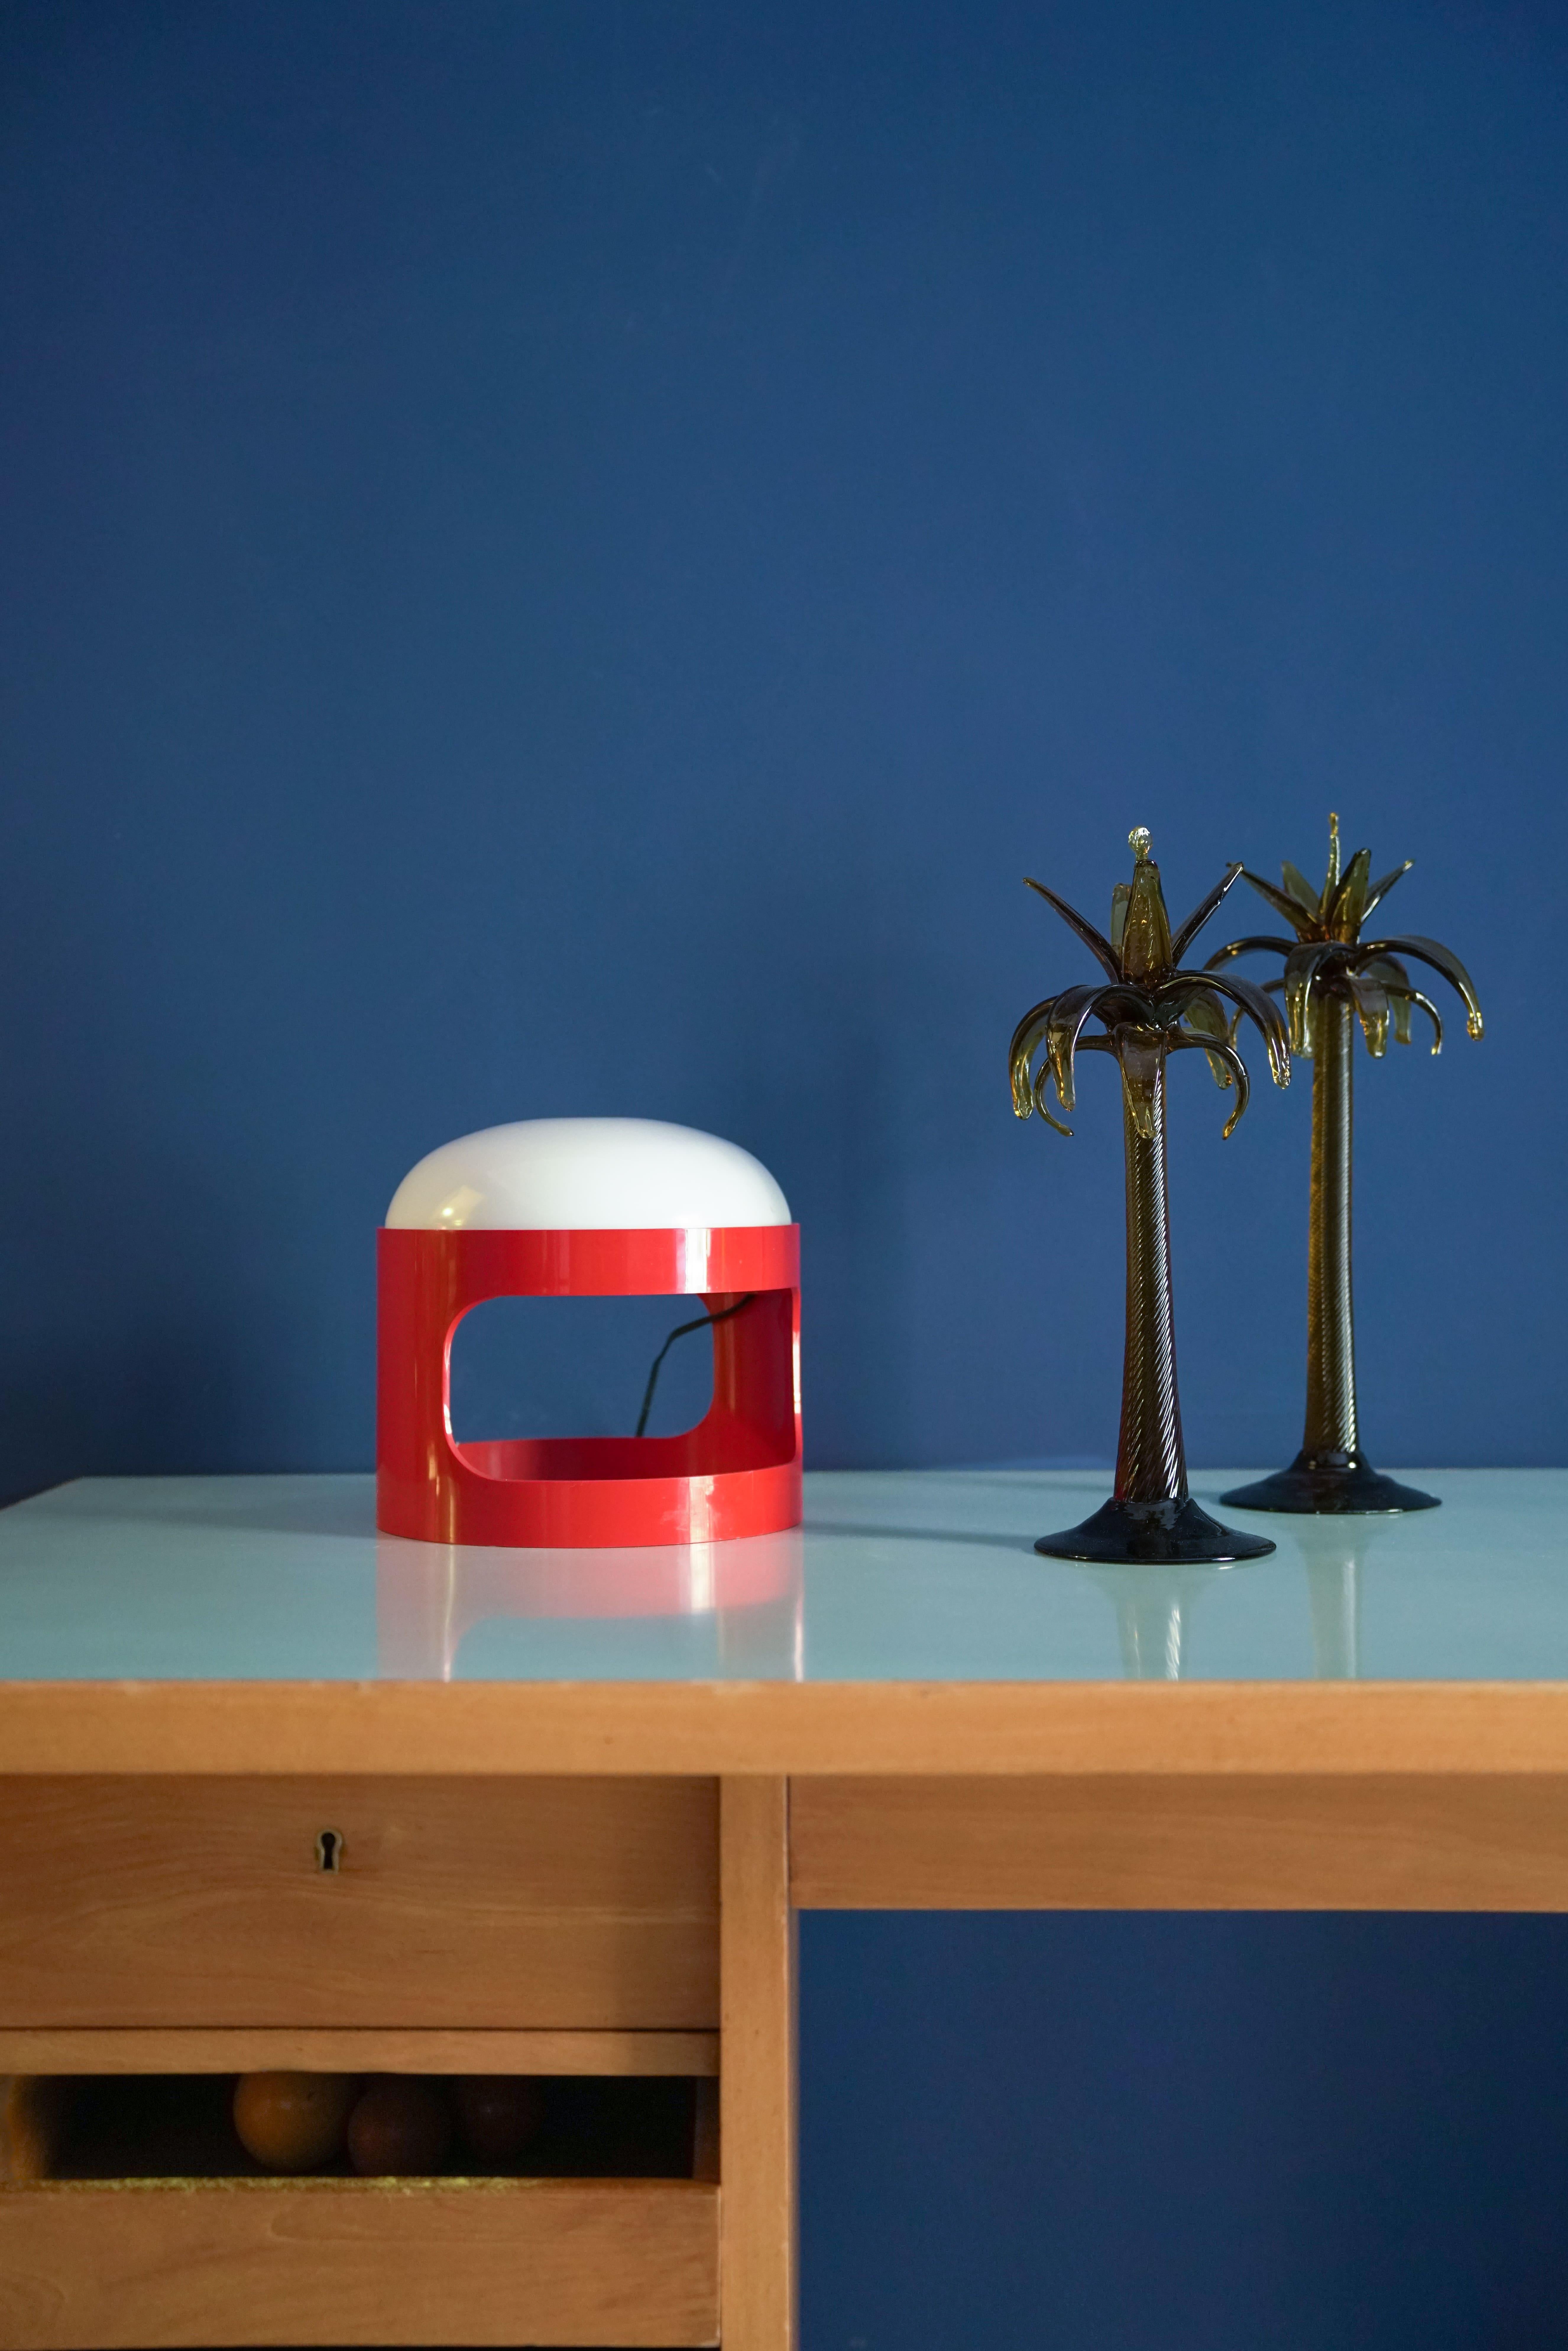 La lampe KD 28, conçue par le célèbre designer italien Joe Colombo pour le fabricant de luminaires italien Kartell, a fait ses débuts en 1967 avec un abat-jour rouge audacieux. Son corps en plastique ABS enveloppe une sphère lumineuse composée de